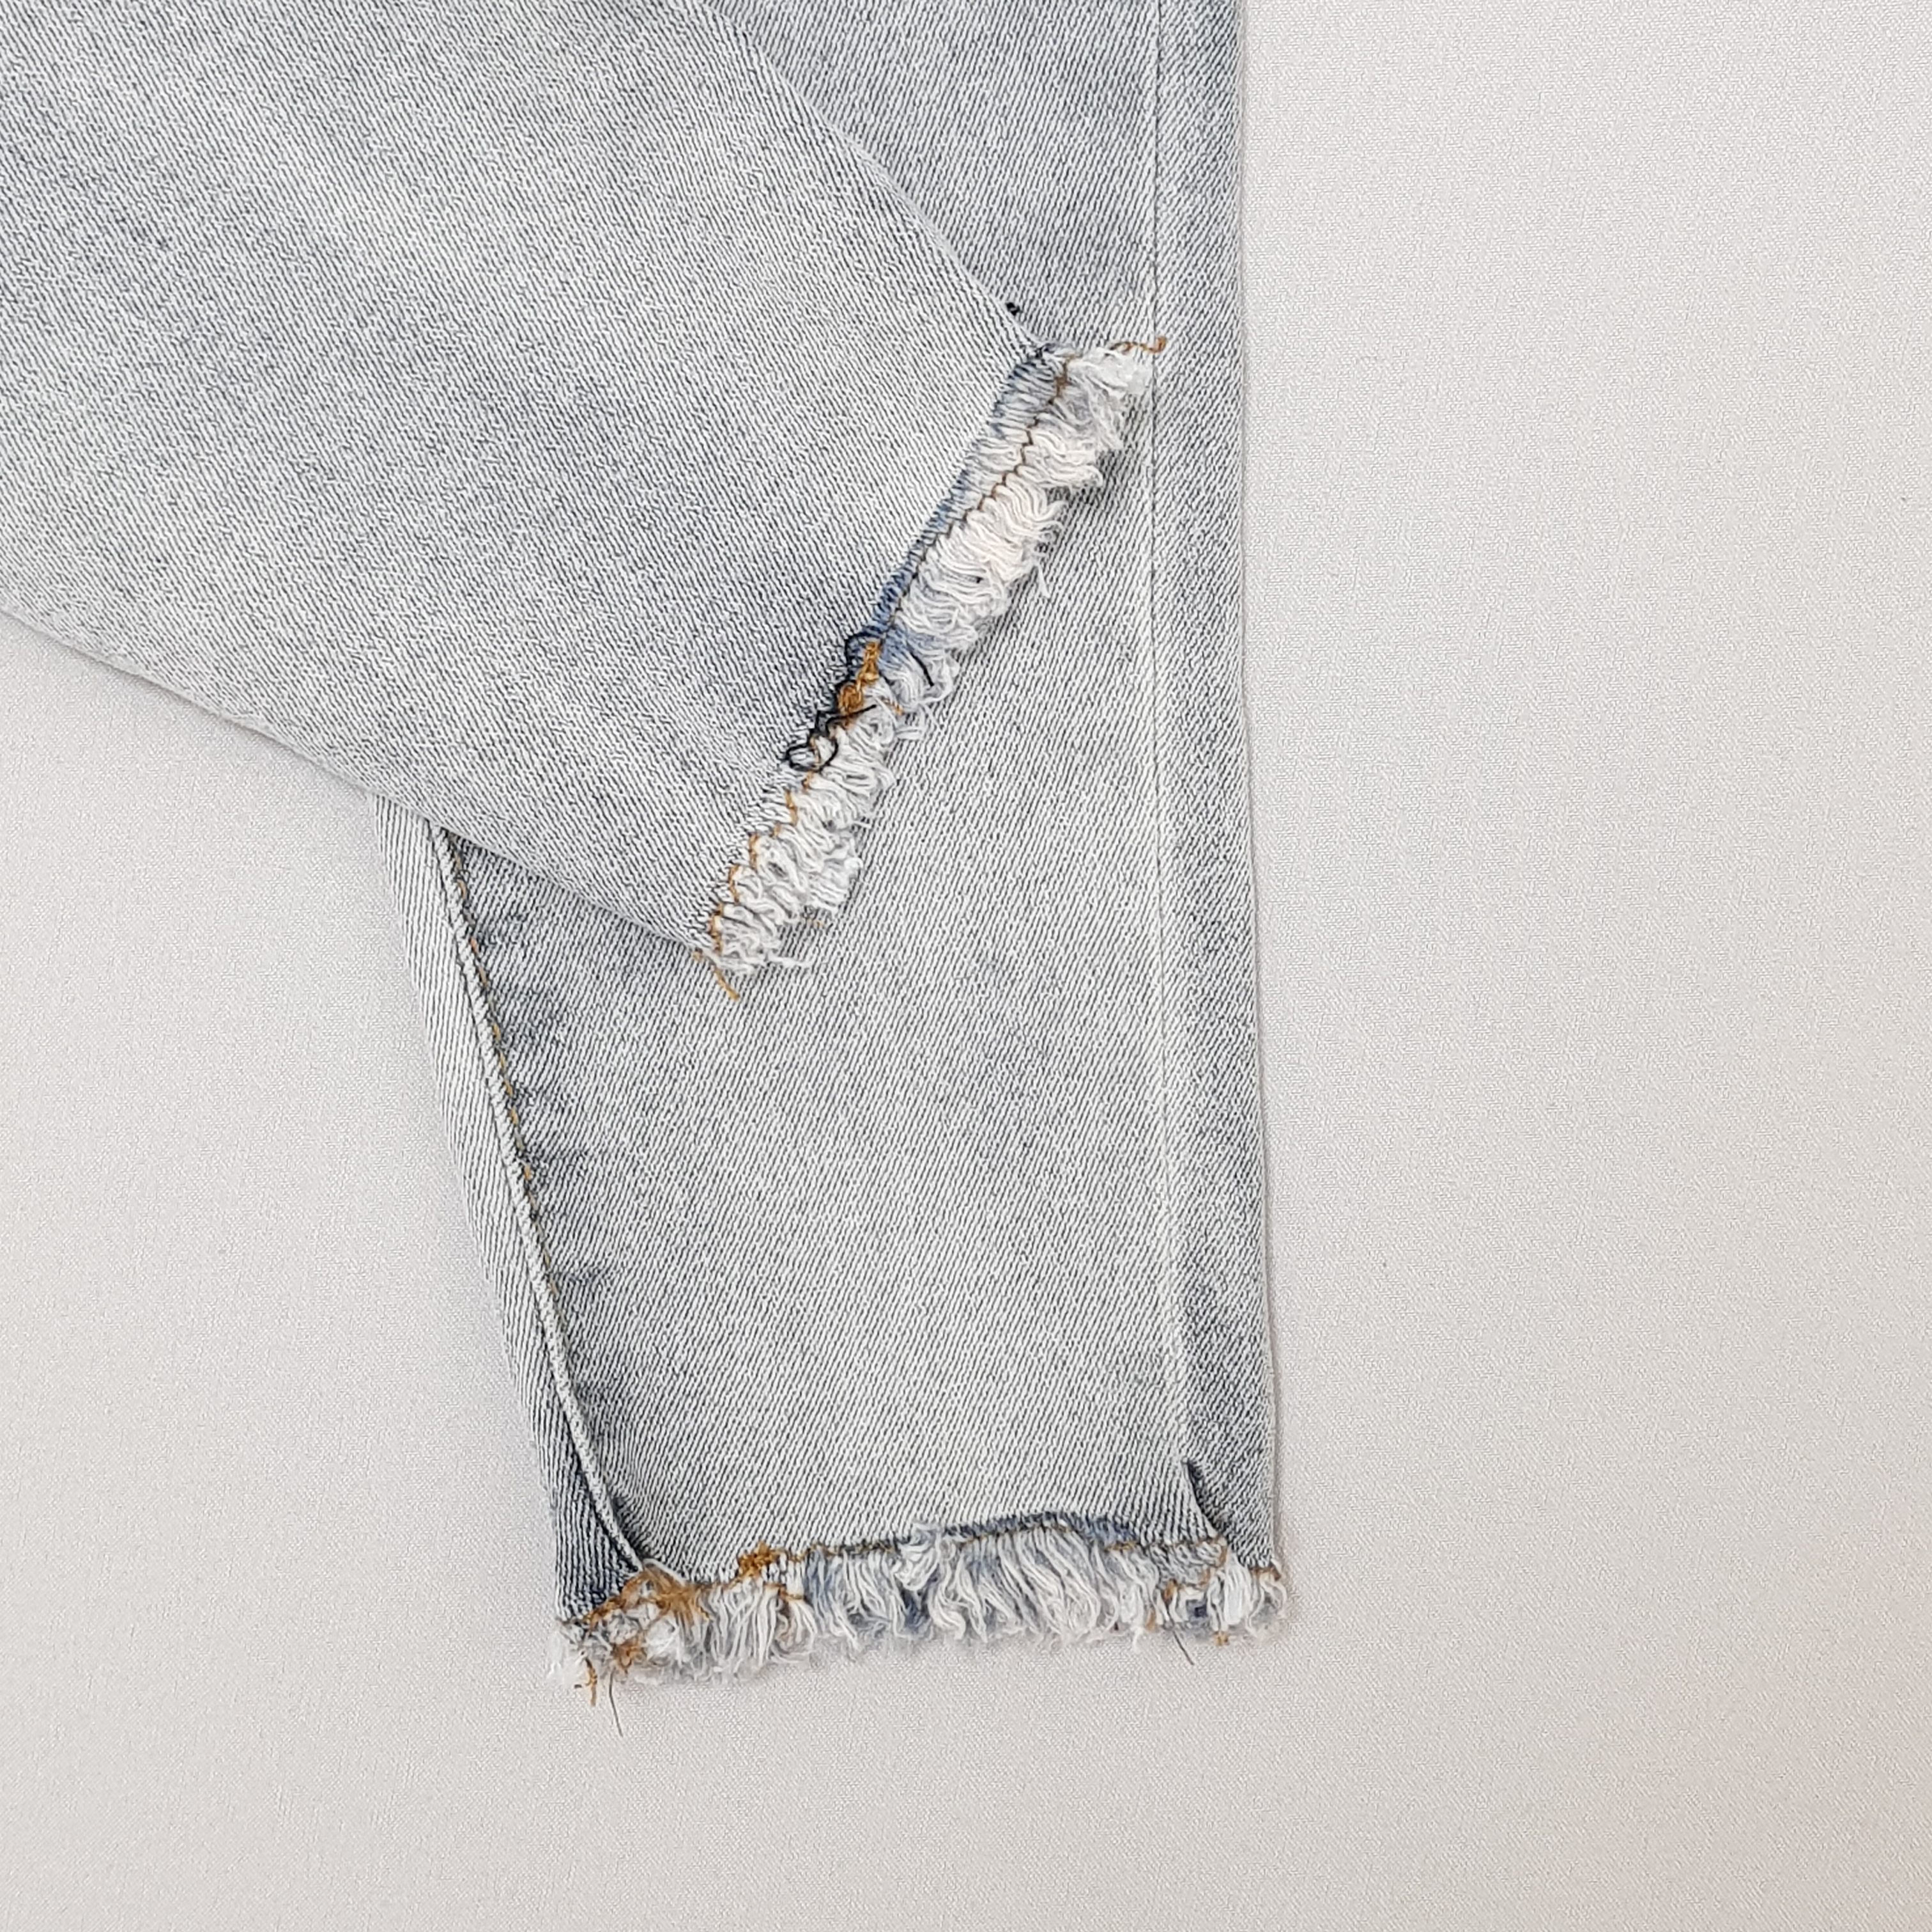 شلوار جینز دخترانه 40702 سایز 2 تا 14 سال مارک Cotton Kids